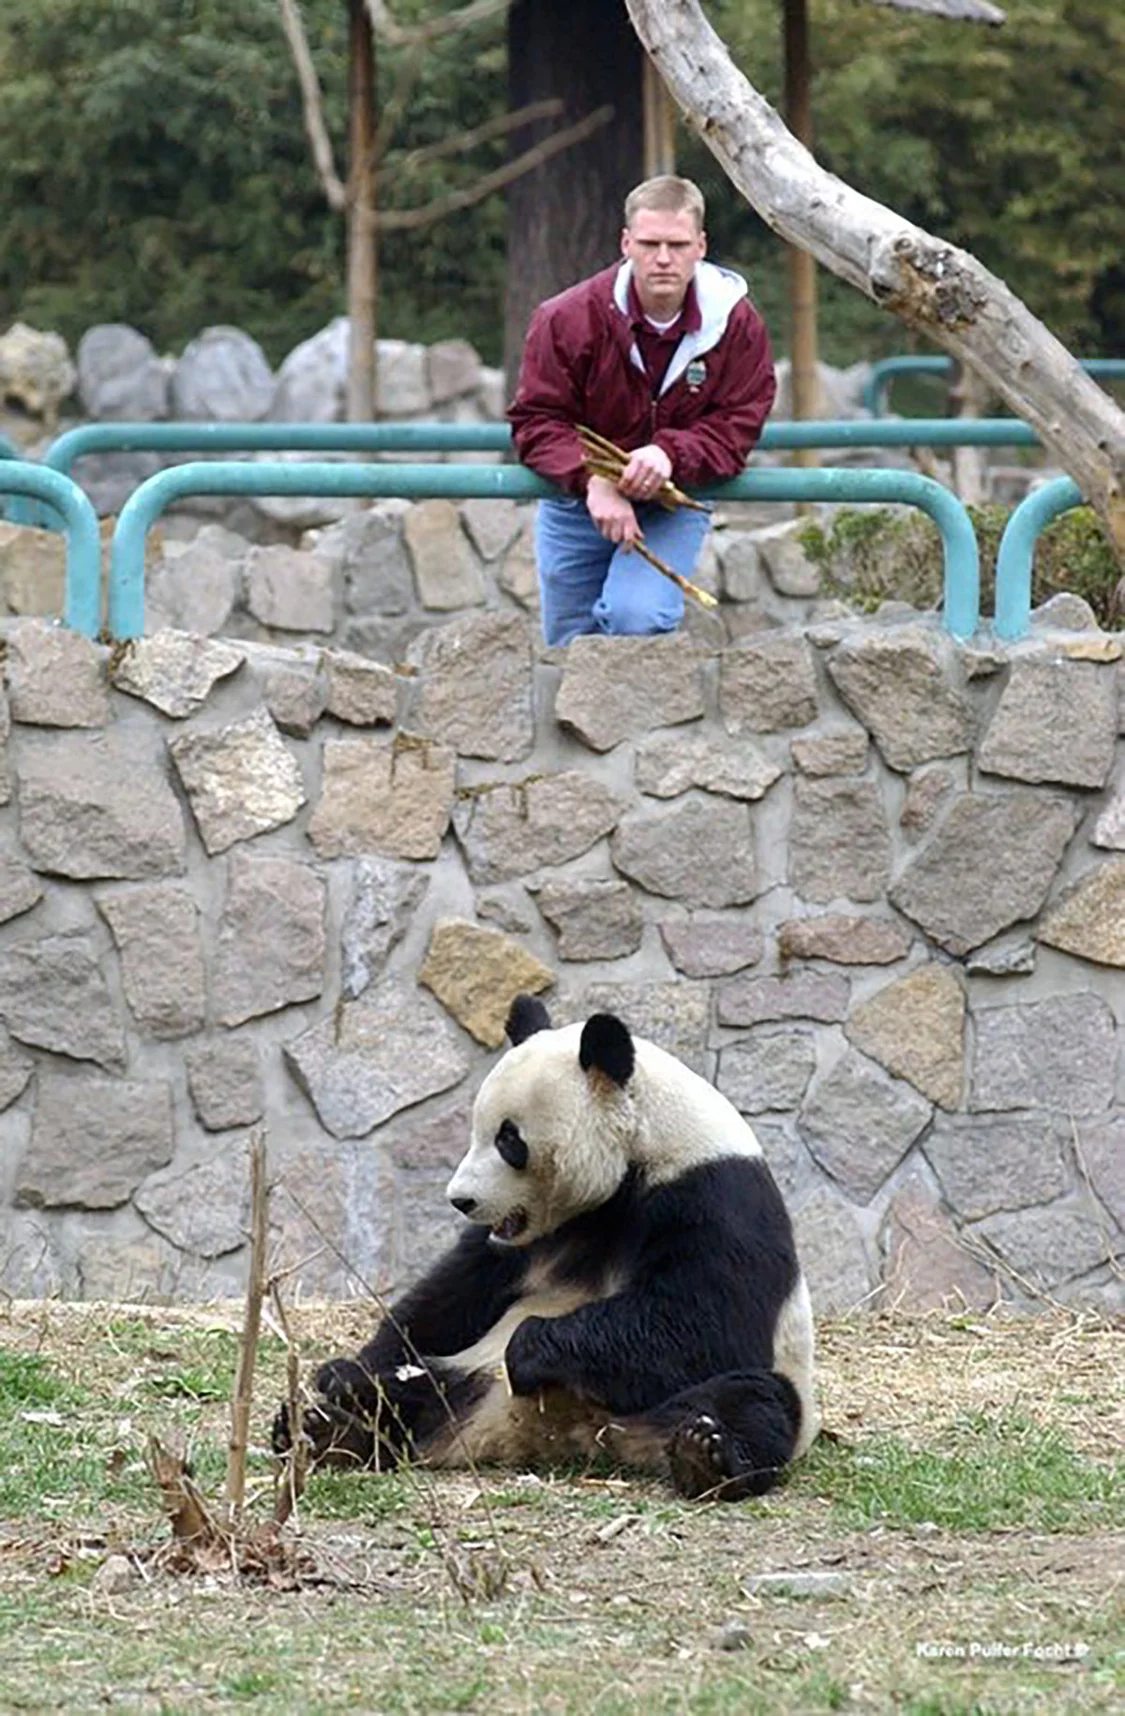 2003年，北京动物园，马特·汤普森隔着围栏看大熊猫。现任孟菲斯动物园总裁兼首席执行官的马特·汤普森，曾是孟菲斯动物园2003年赴中迎接大熊猫们的成员之一。当年，他在抵达中国后，便对大熊猫展现出了浓浓的喜爱。Karen Pulfer Focht 摄